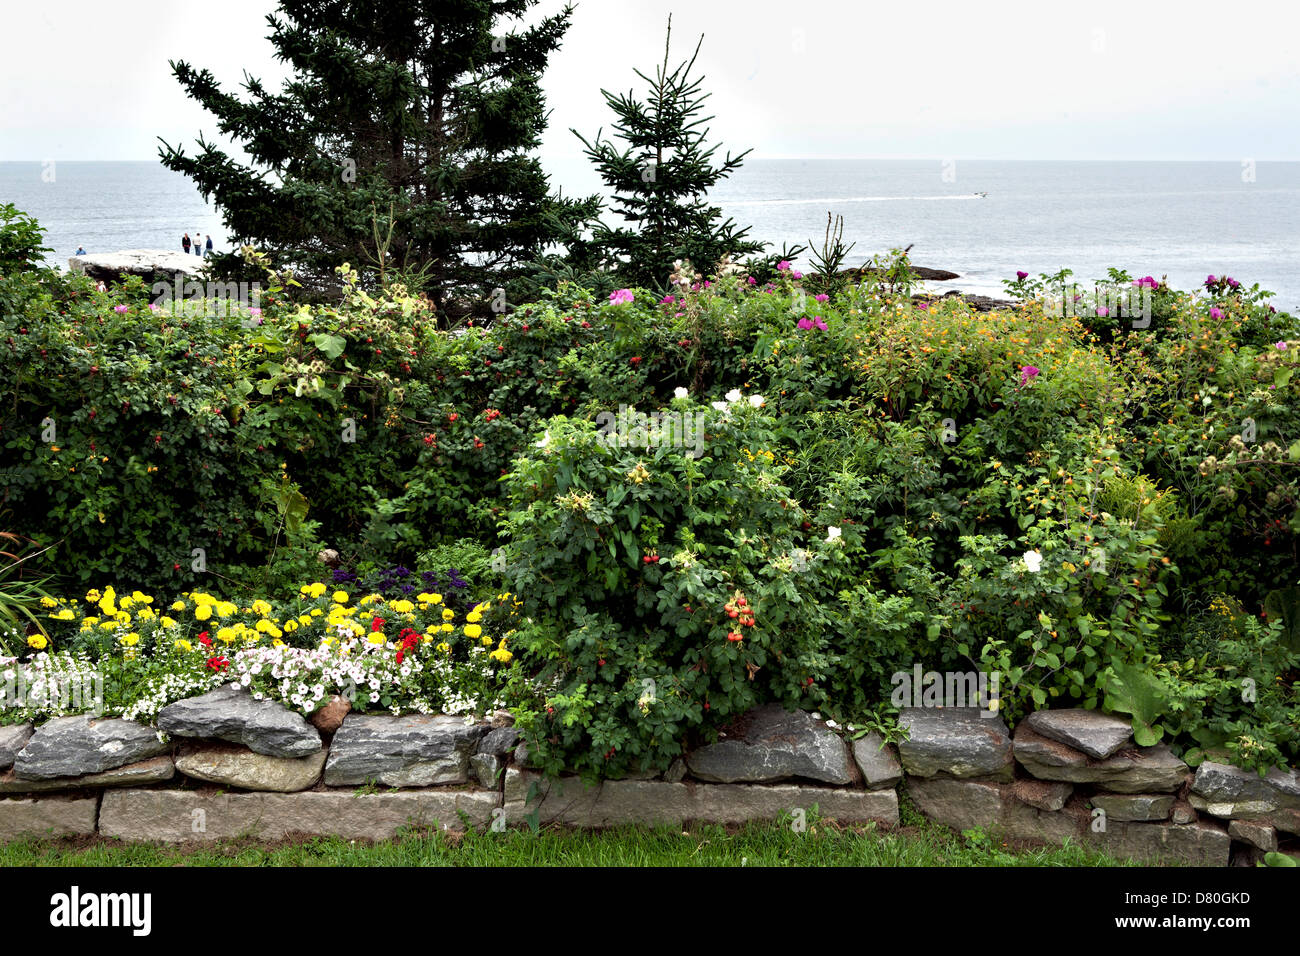 Jardin mixte le long d'un mur de pierre donnant sur l'océan Atlantique, dans le Maine. Au-delà, un hors-bord, 4 personnes dans la distance. Banque D'Images